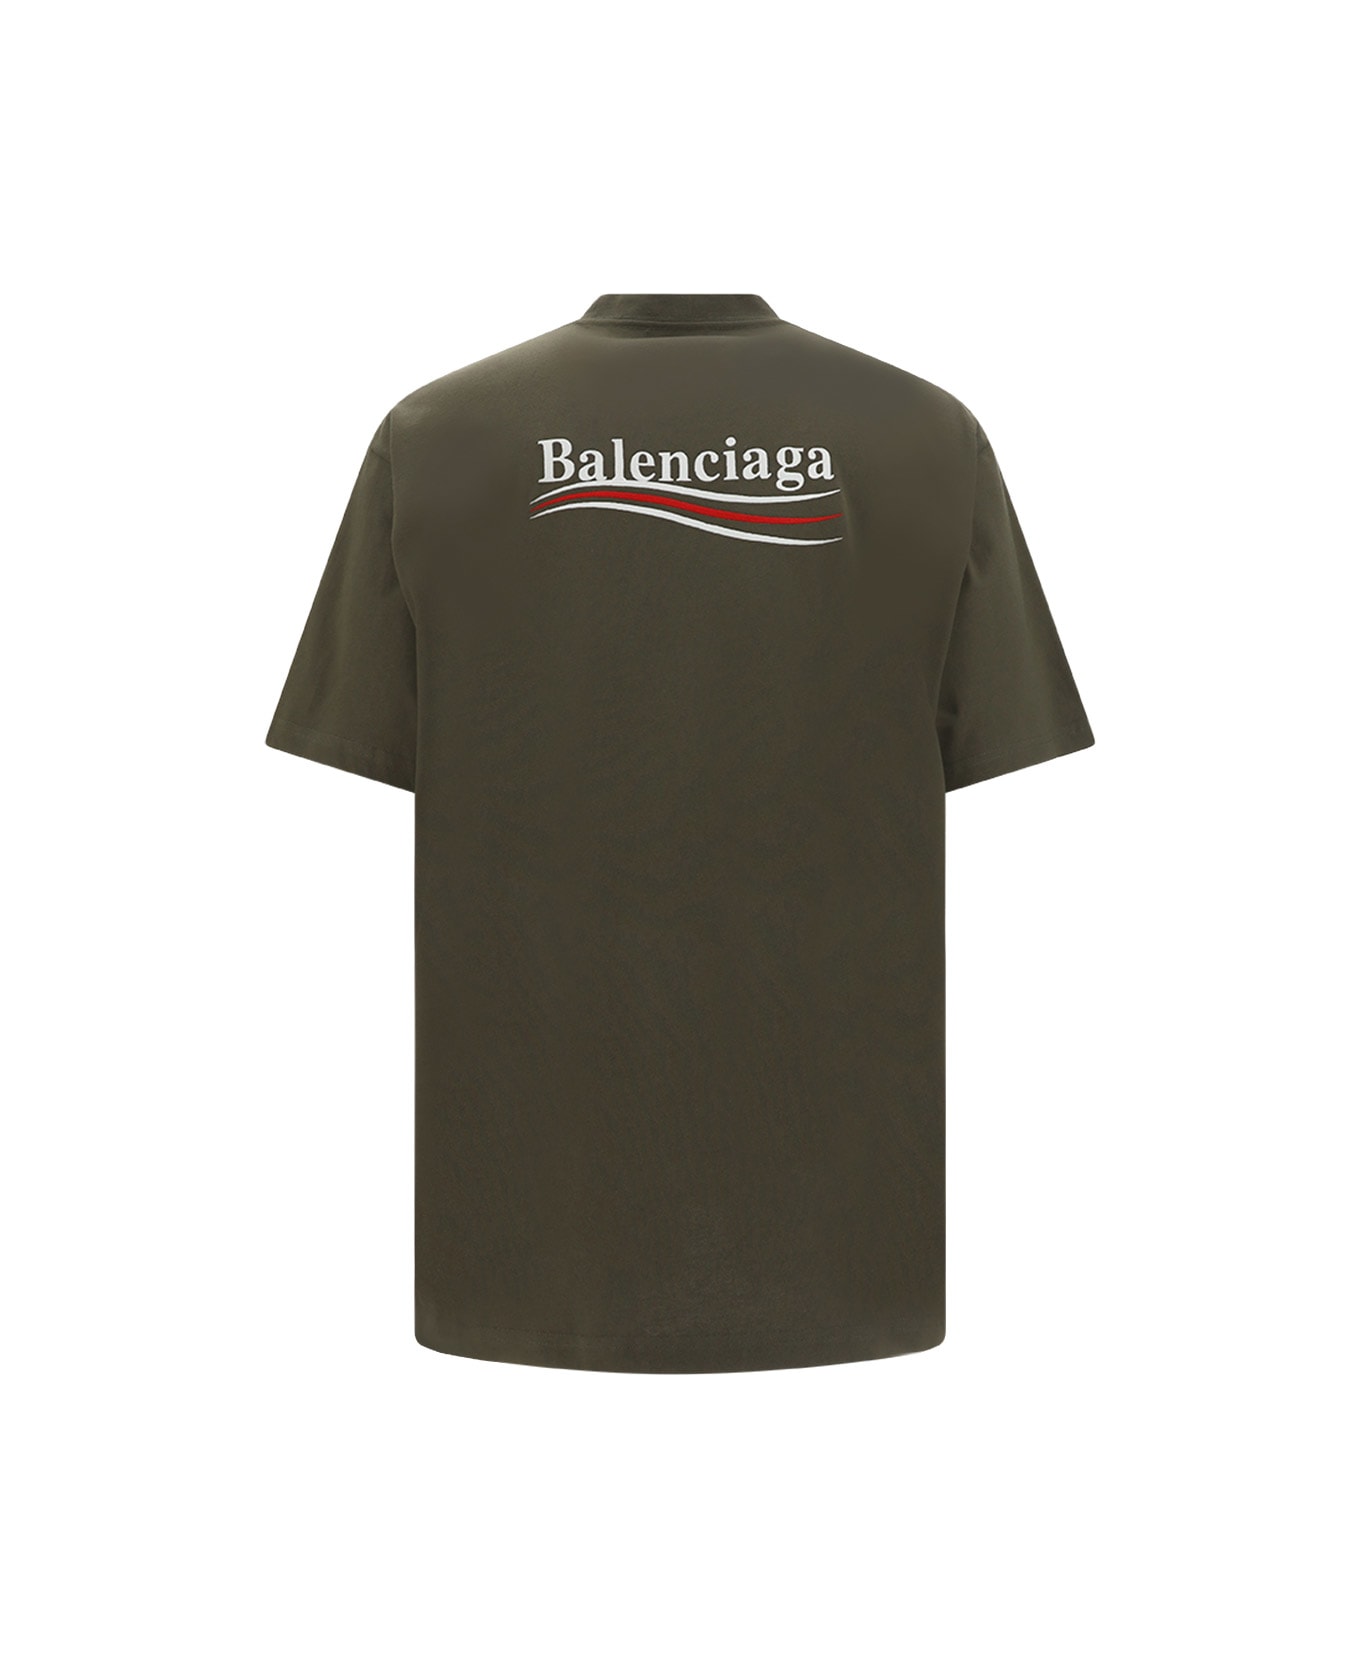 Balenciaga T-shirt - KAKI